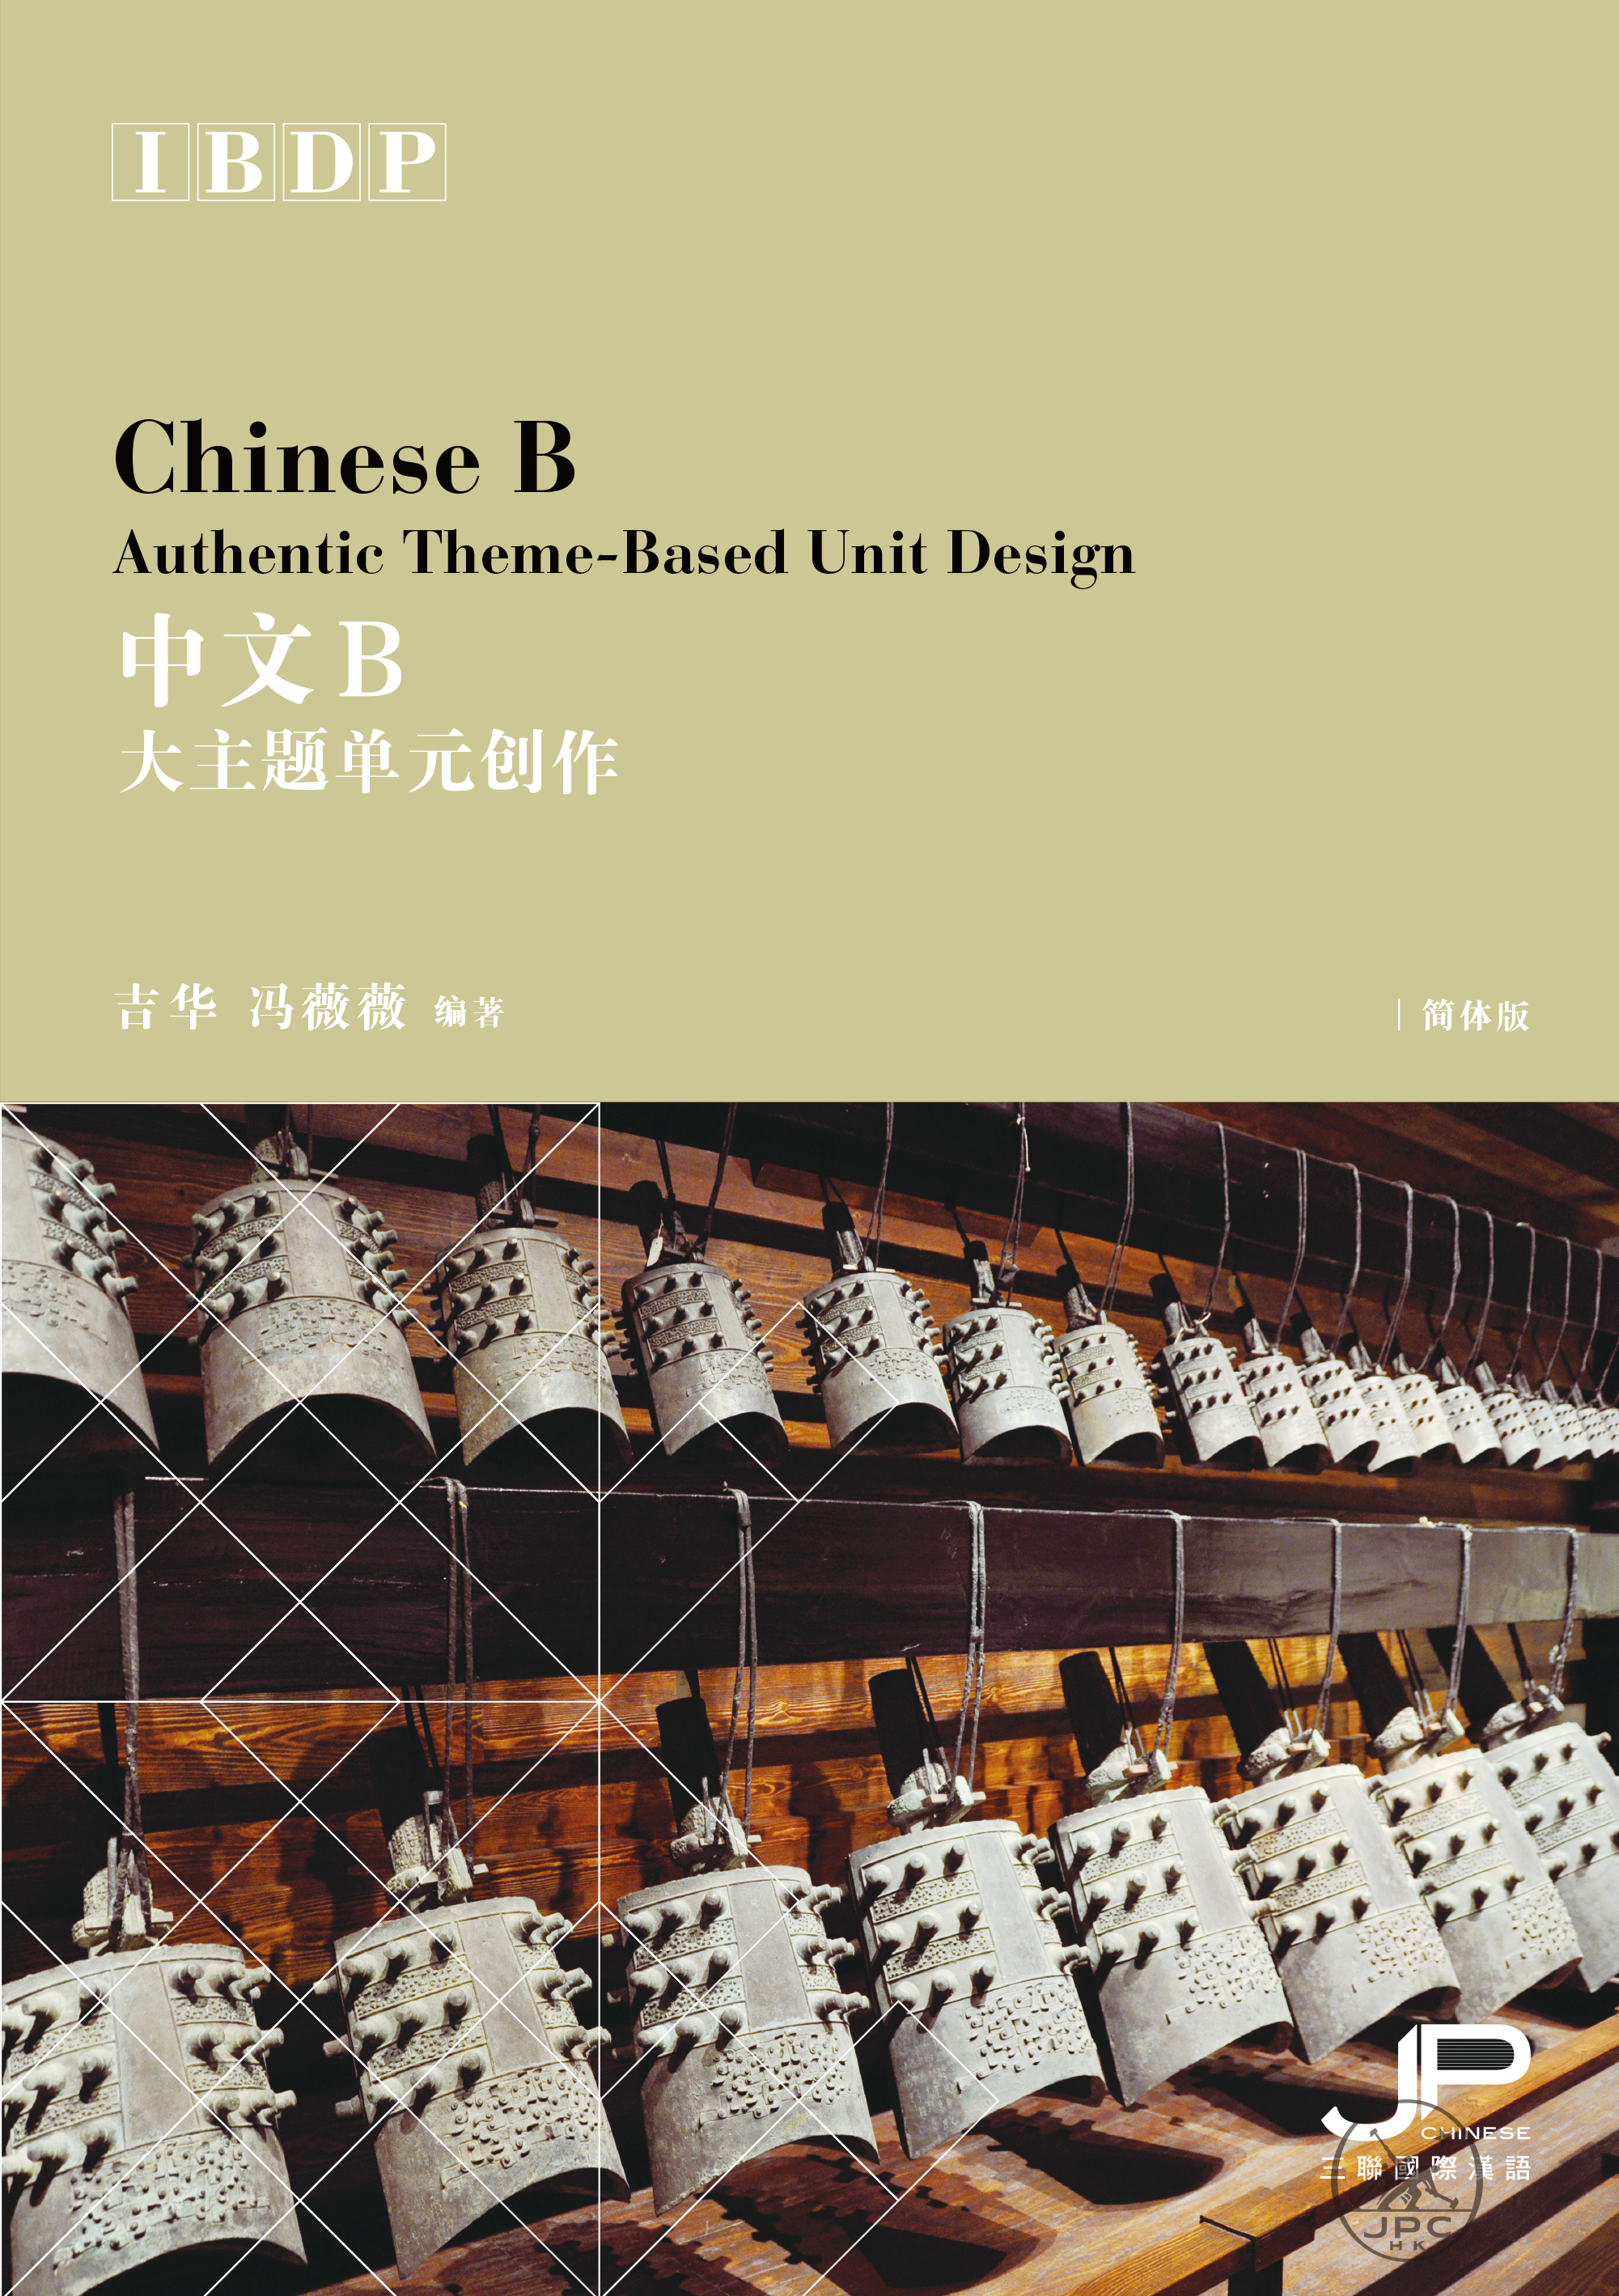 IBDP中文B大主题单元创作 (简体版)  Chinese B Authentic Theme-Based Unit Design